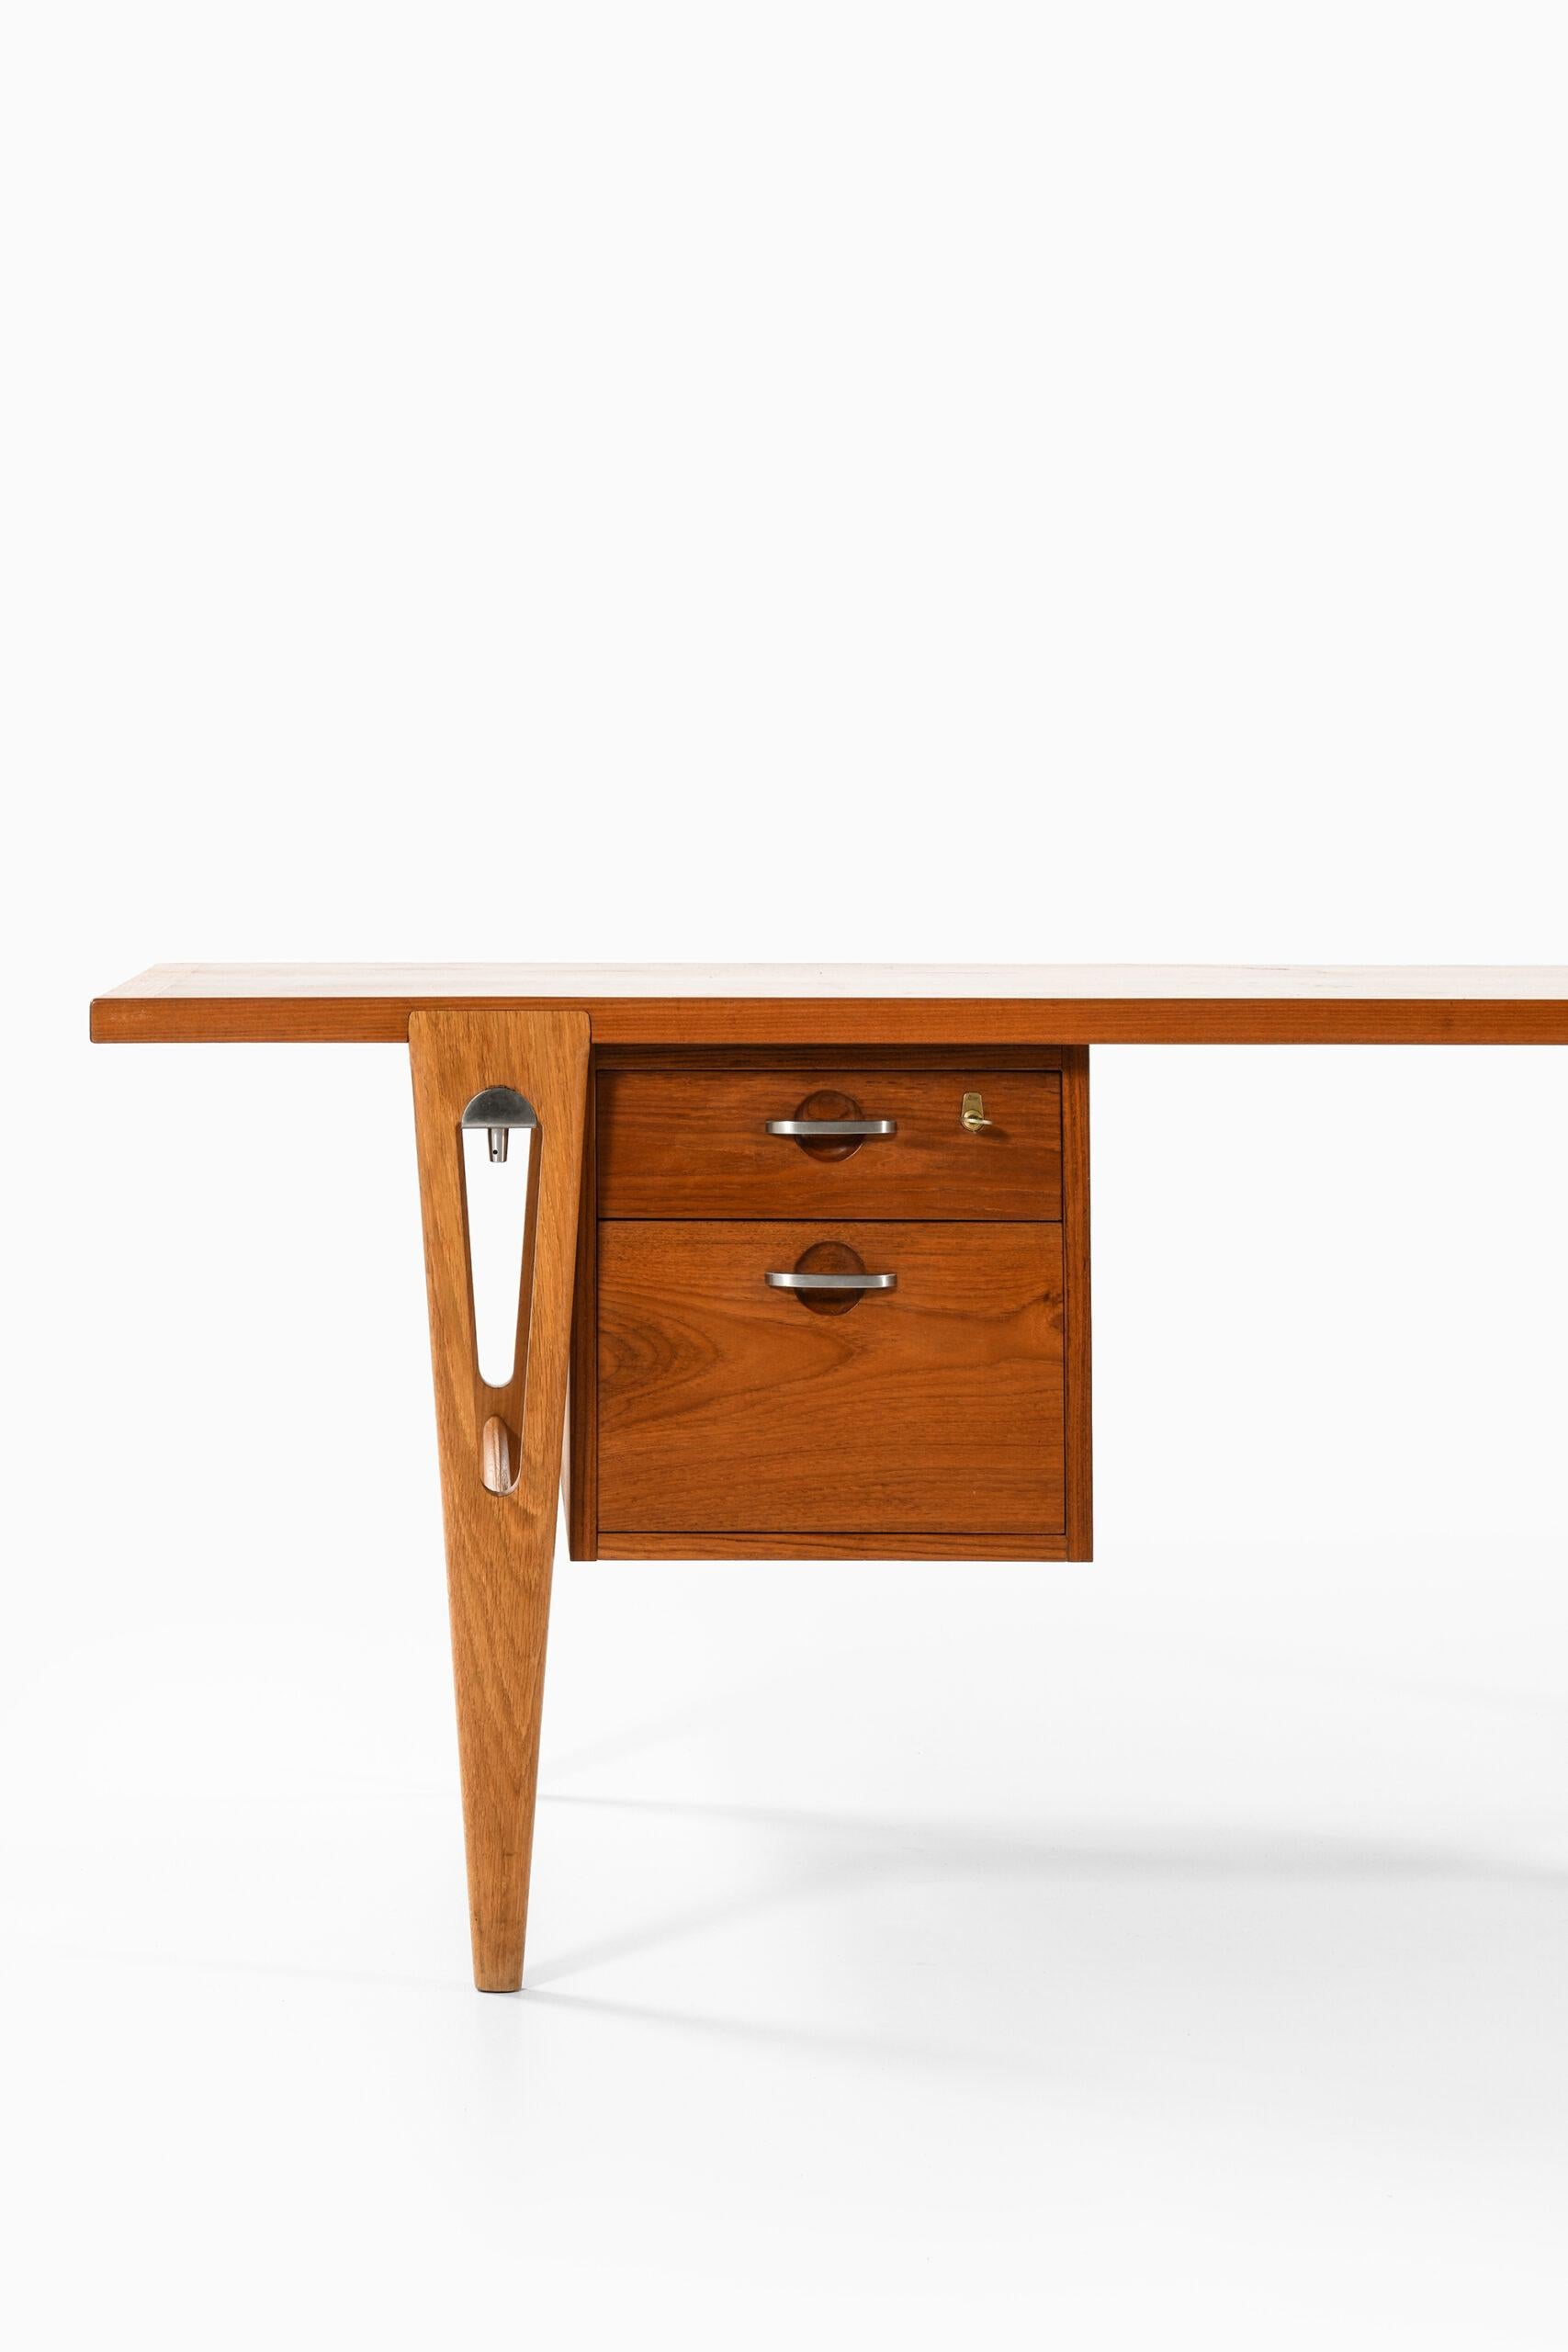 Very rare freestanding desk designed by Hans Wegner. Produced by cabinetmaker Johannes Hansen in Denmark.